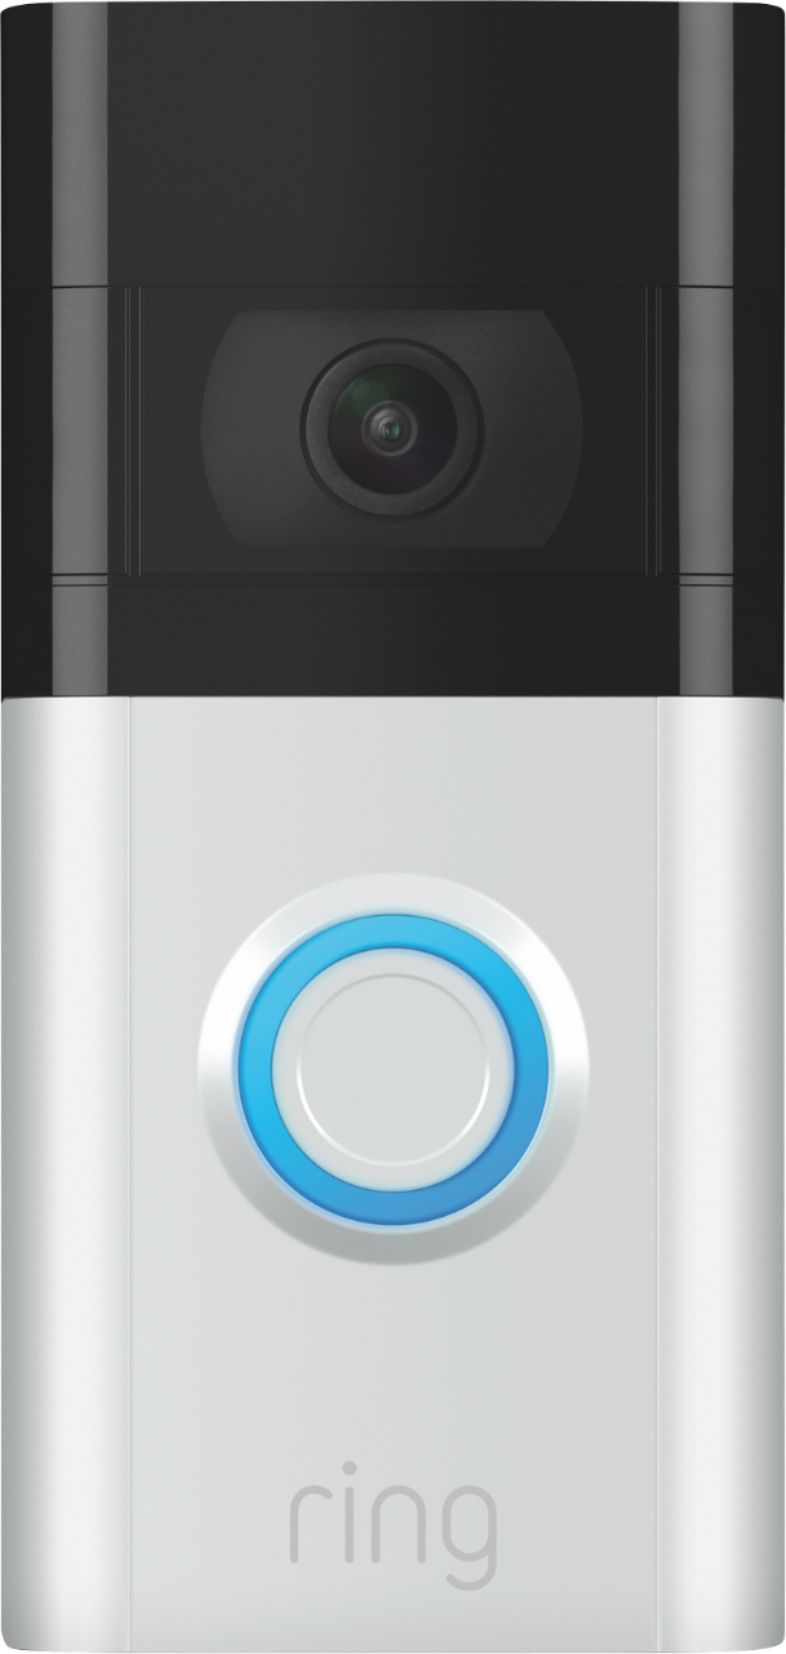 Ring Video Doorbell 3 Satin Nickel 8VRSLZ0EN0 Best Buy